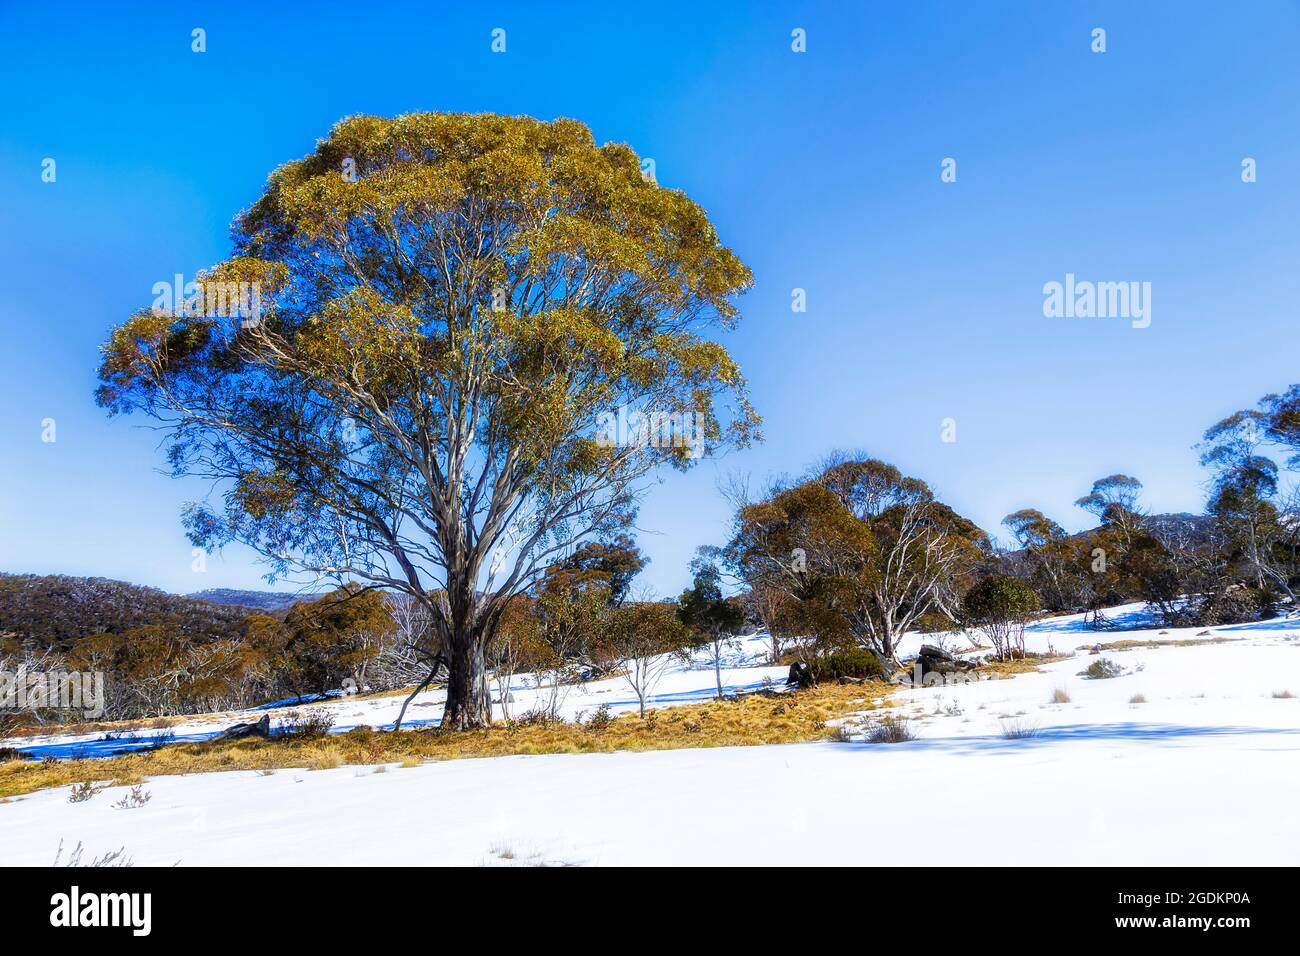 Campi da neve nelle Snowy Mountains dell'Australia - Parco nazionale Kosciuszko nella stagione invernale di sci e sci di fondo. Foto Stock